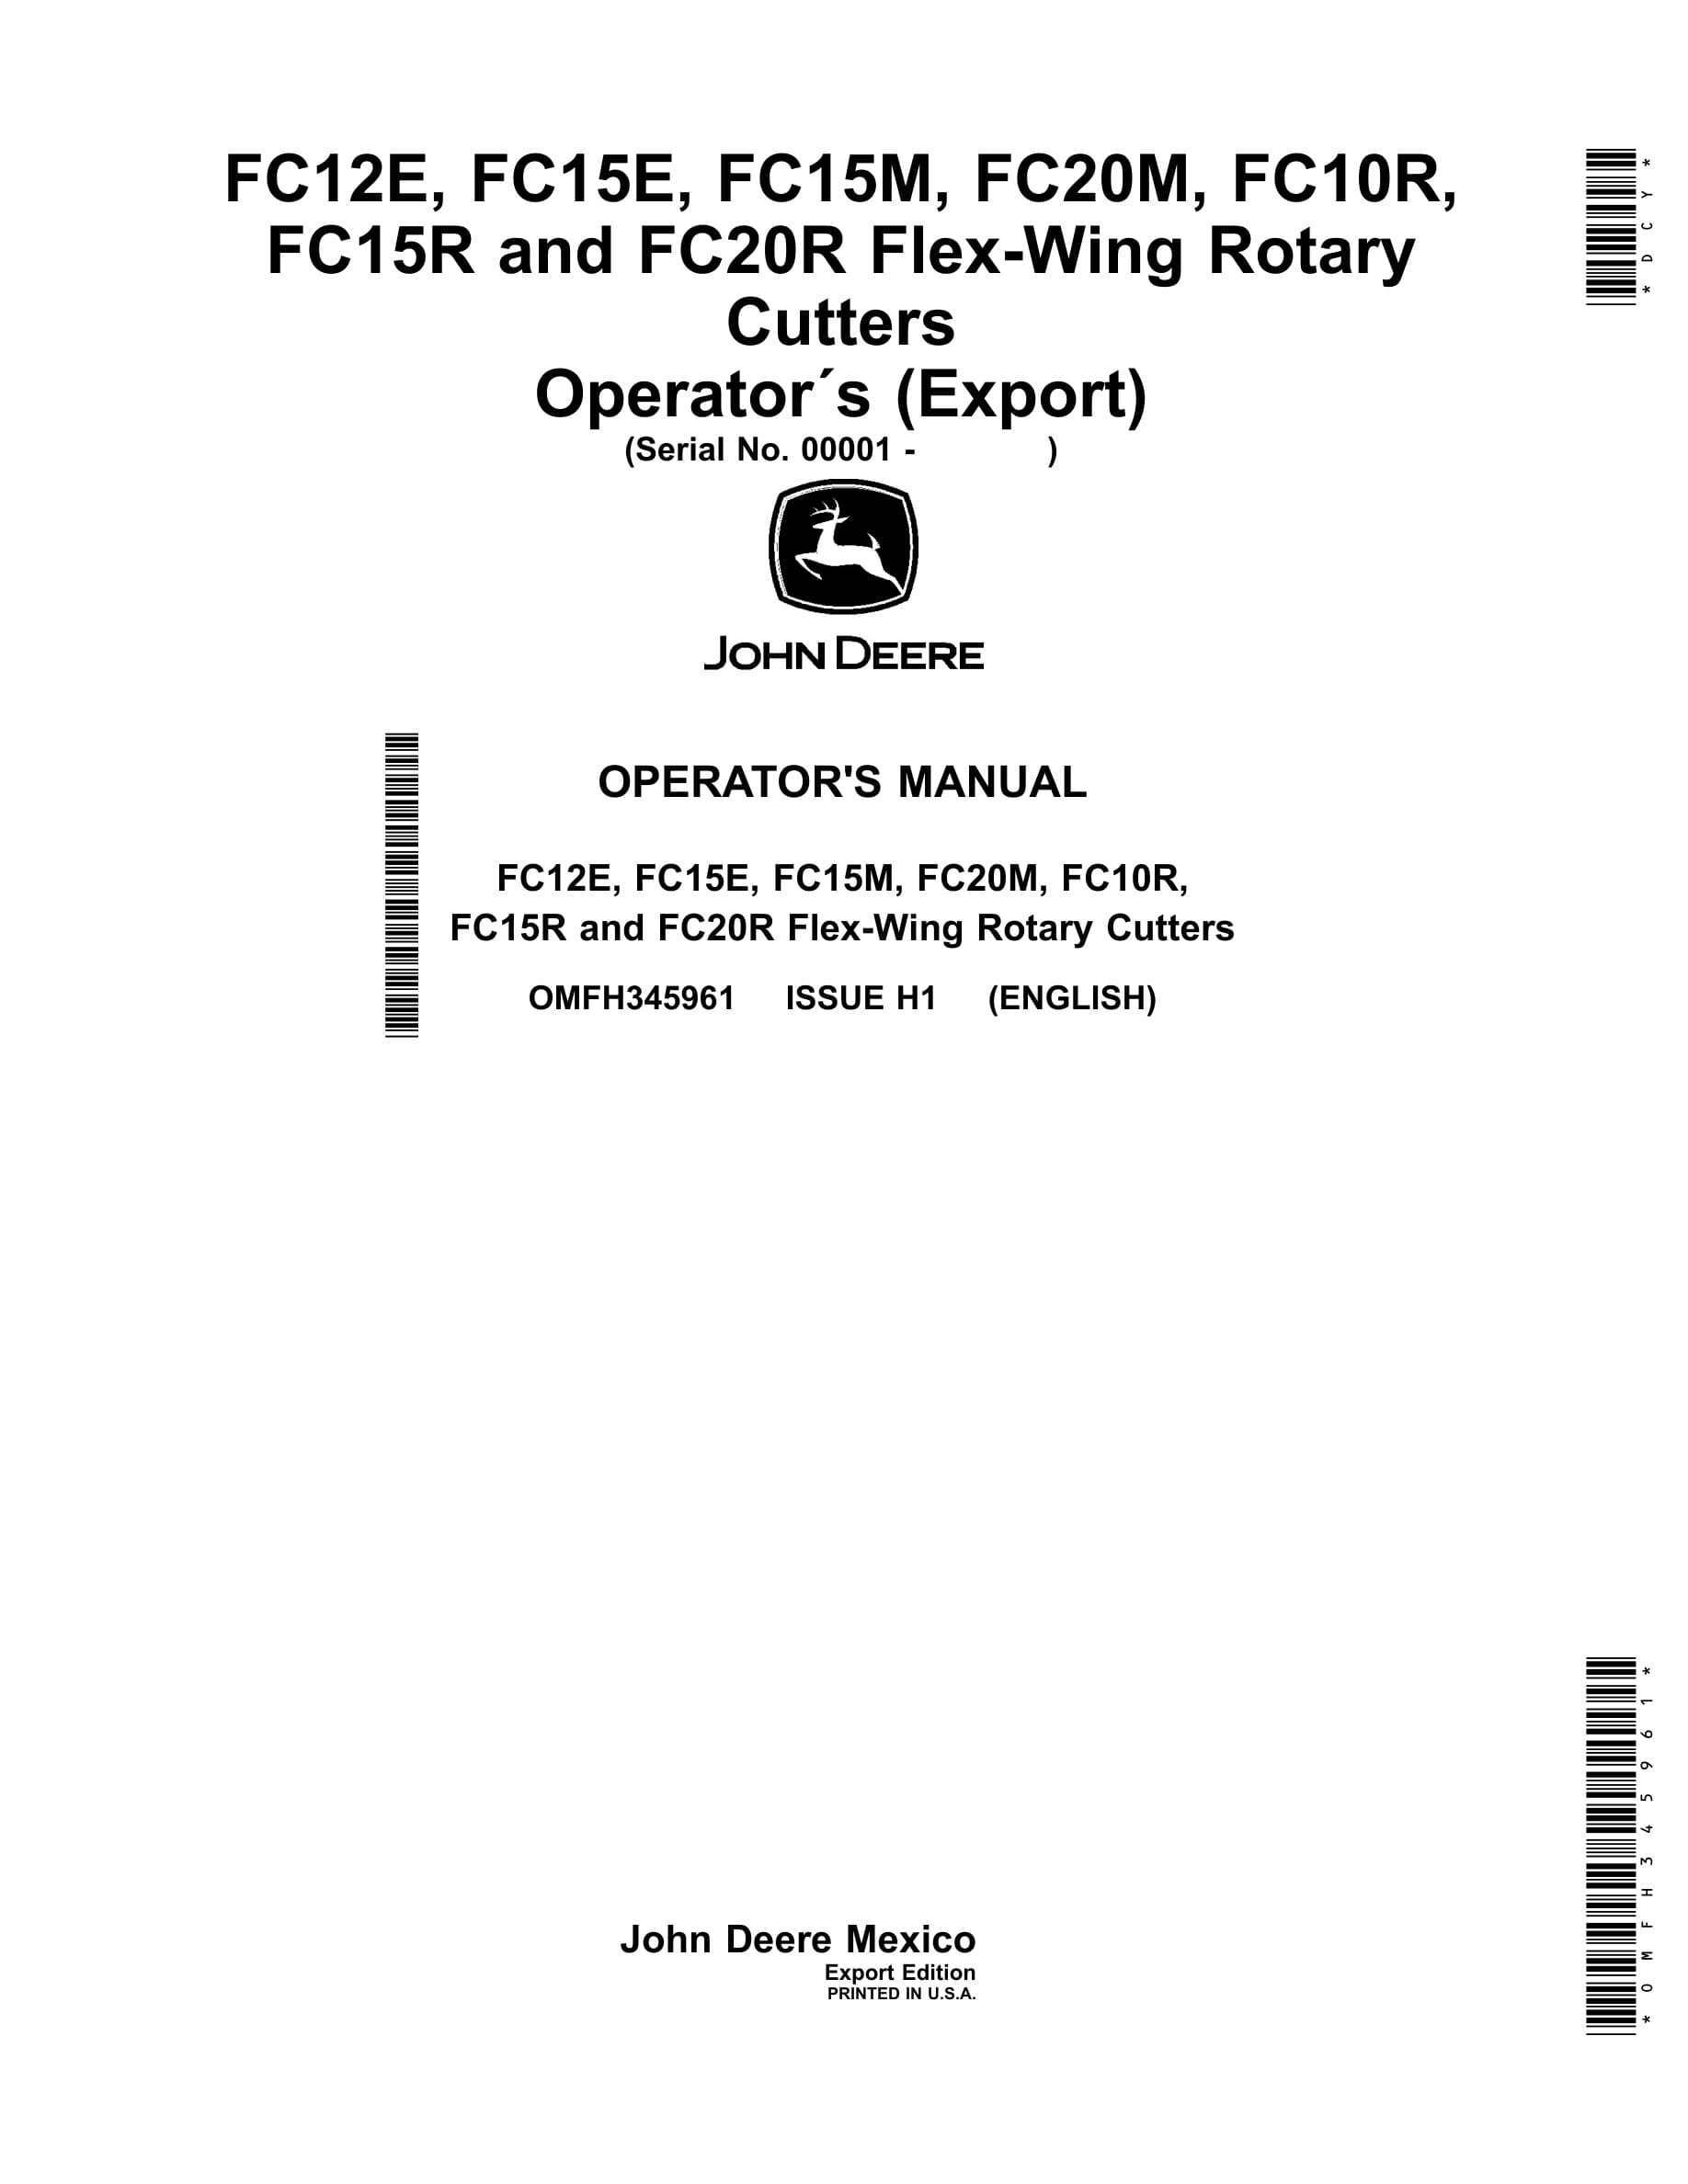 John Deere FC12E, FC15E, FC15M, FC20M, FC10R, FC15R and FC20R Flex Operator Manual OMFH345961-1